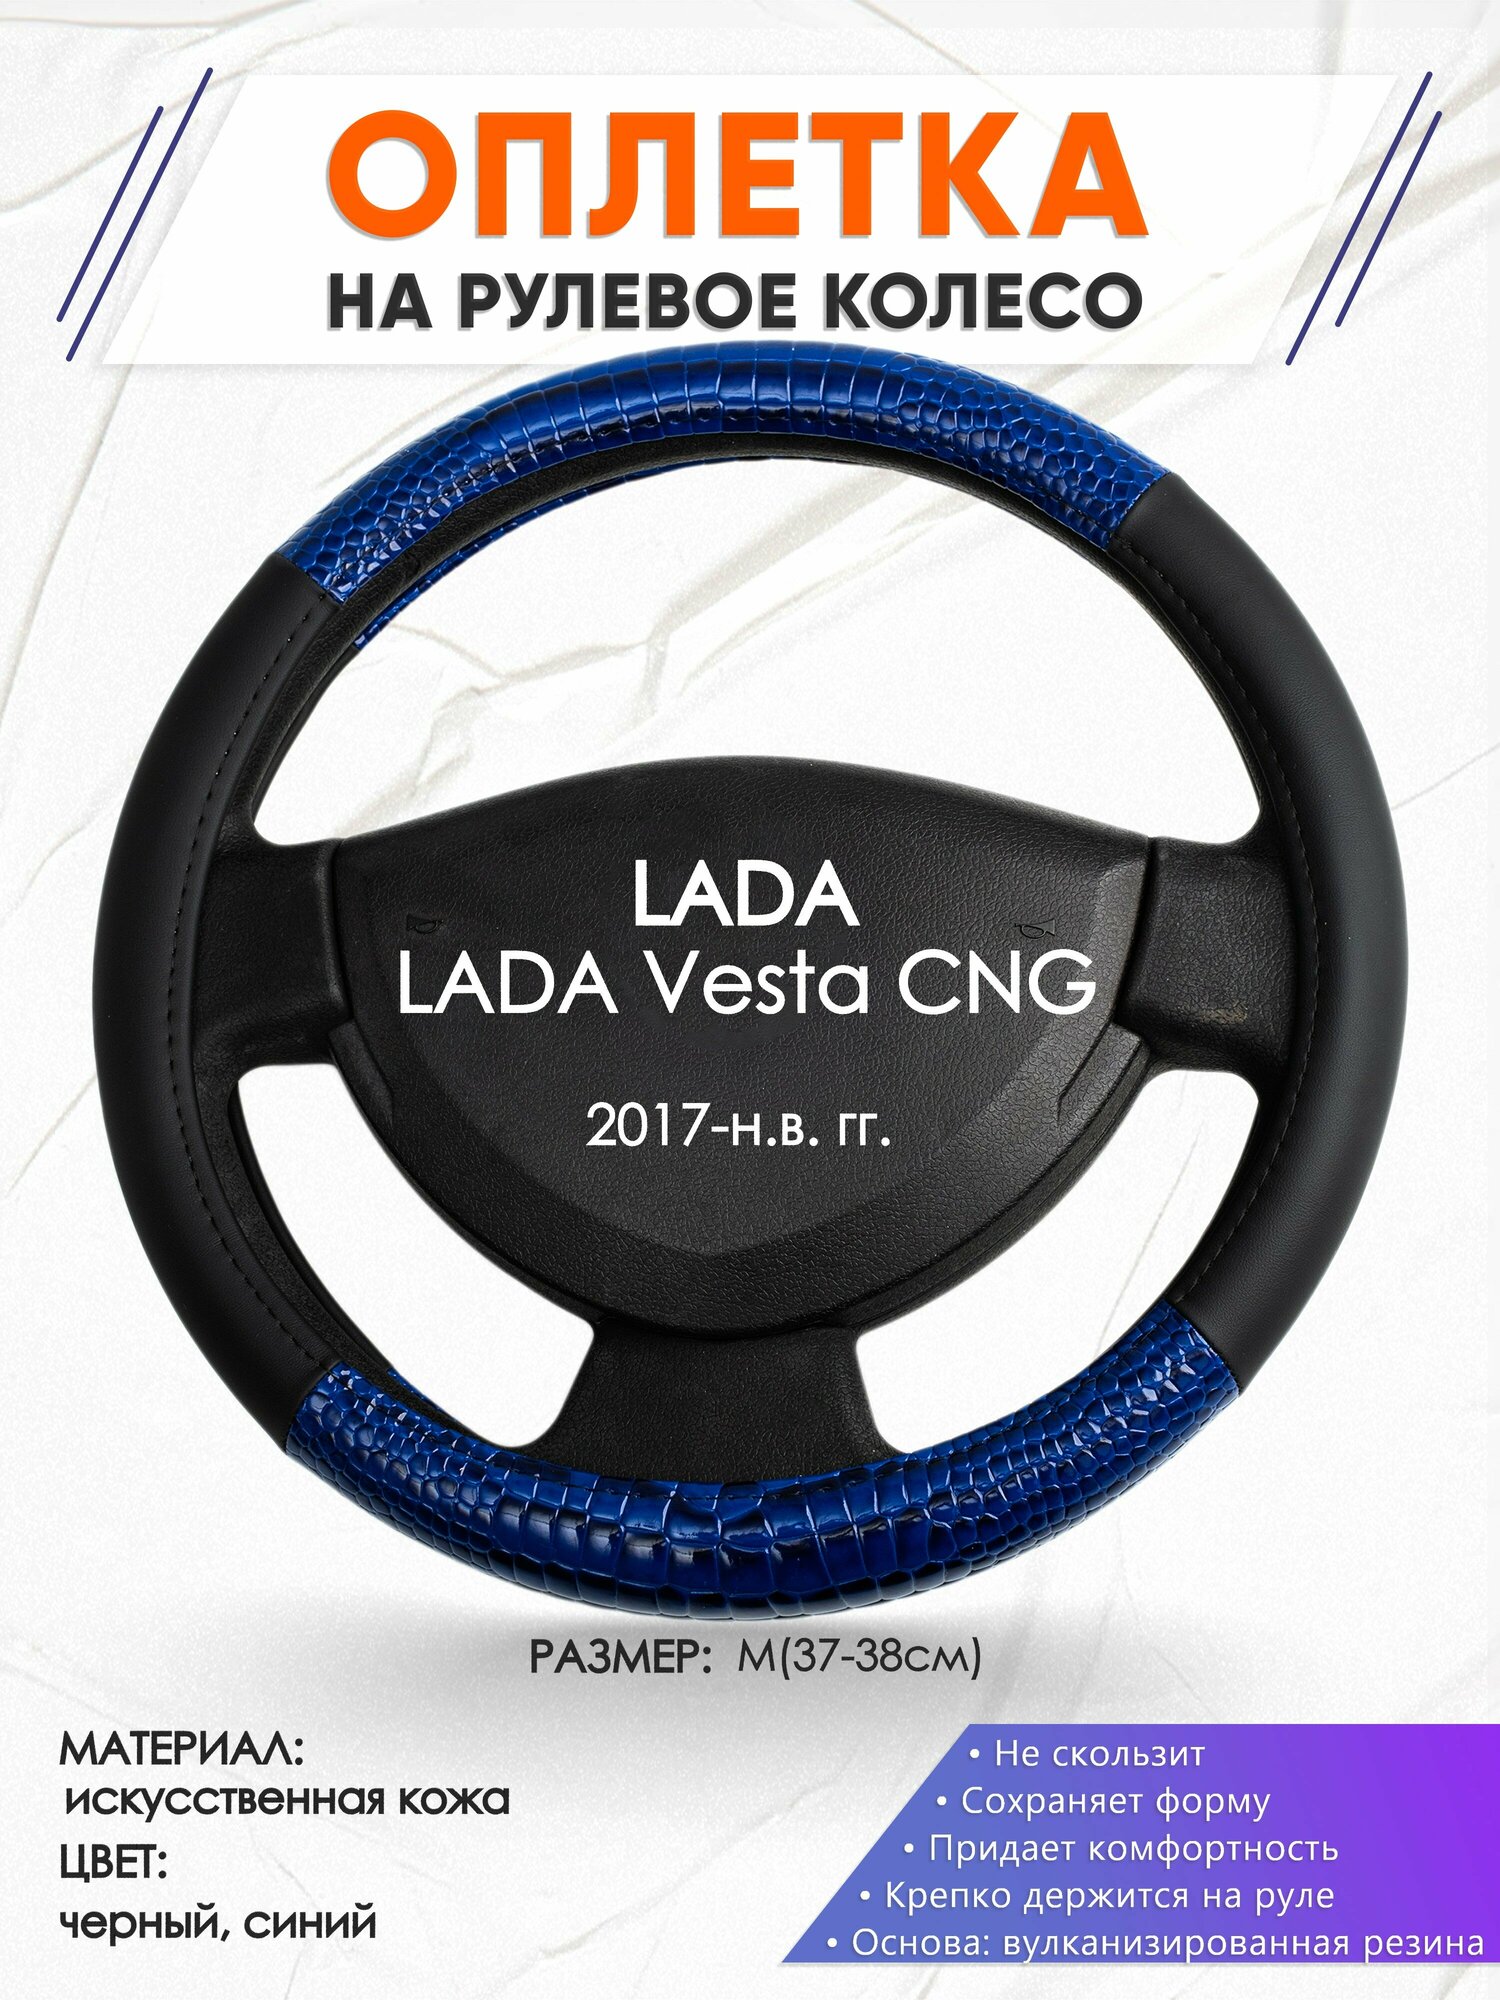 Оплетка наруль для LADA Vesta CNG(Лада Веста) 2017-н. в. годов выпуска, размер M(37-38см), Искусственная кожа 82